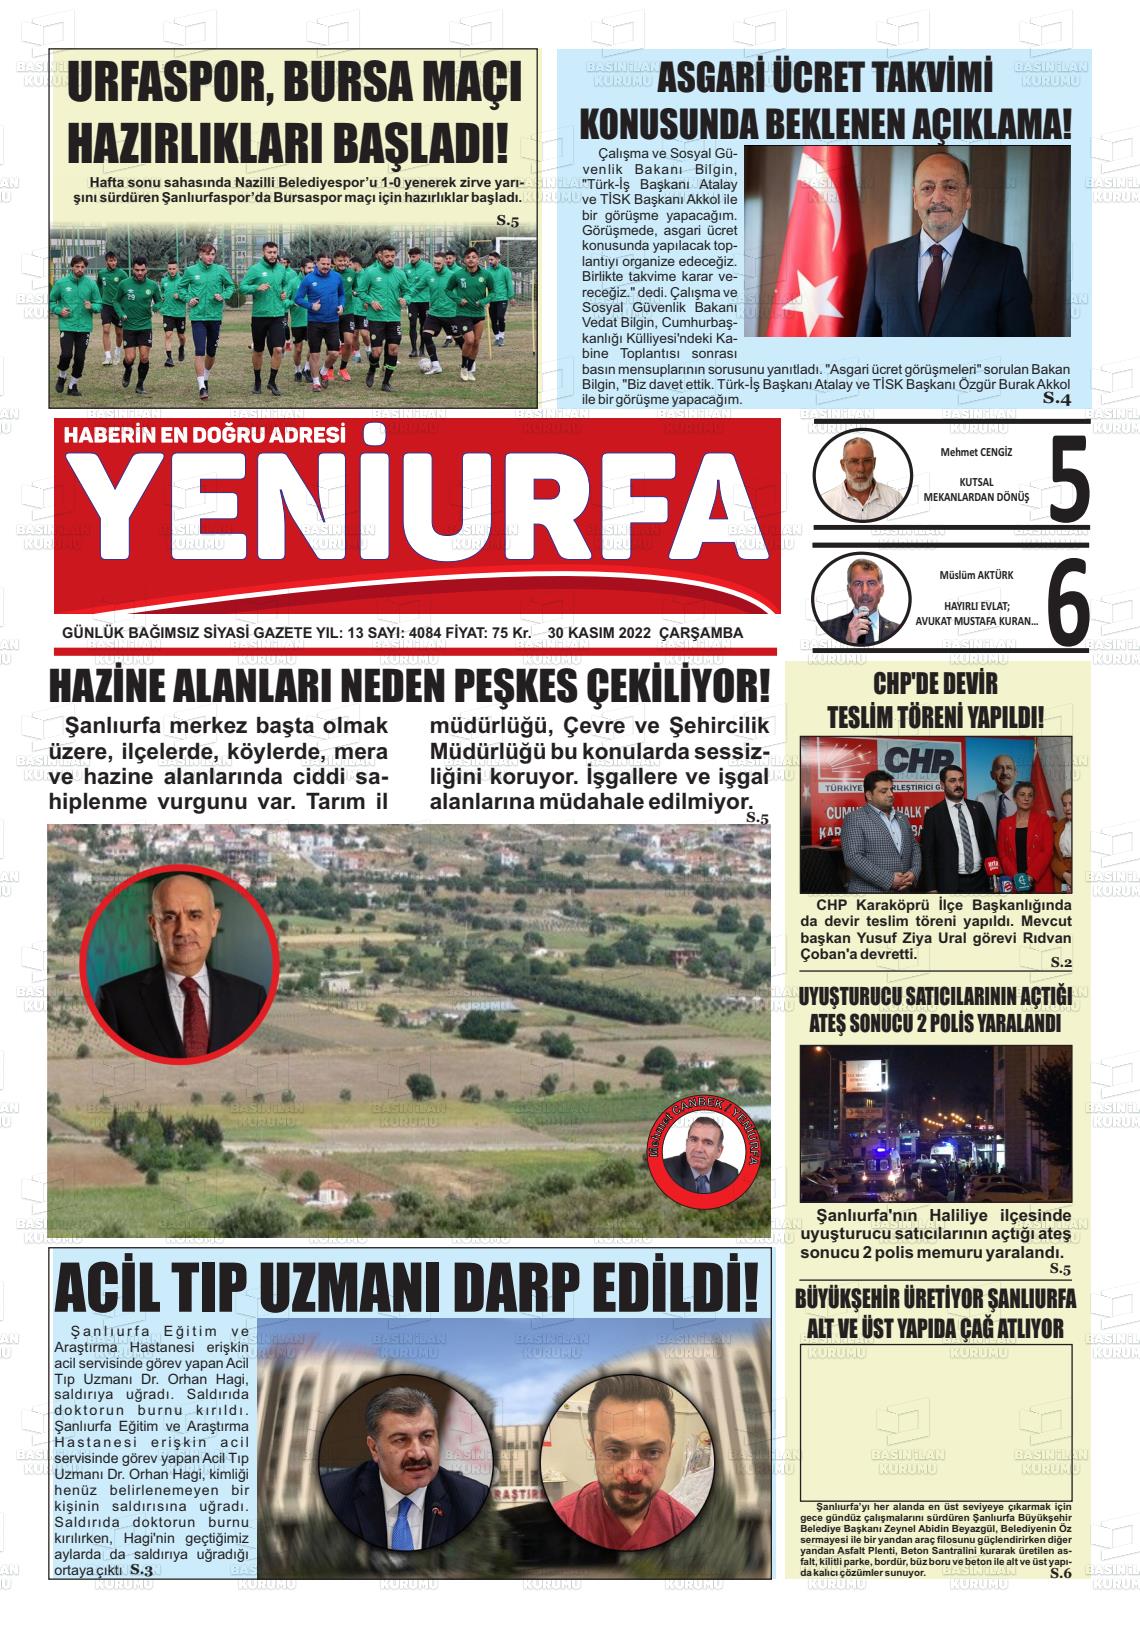 30 Kasım 2022 Yeni Urfa Gazete Manşeti